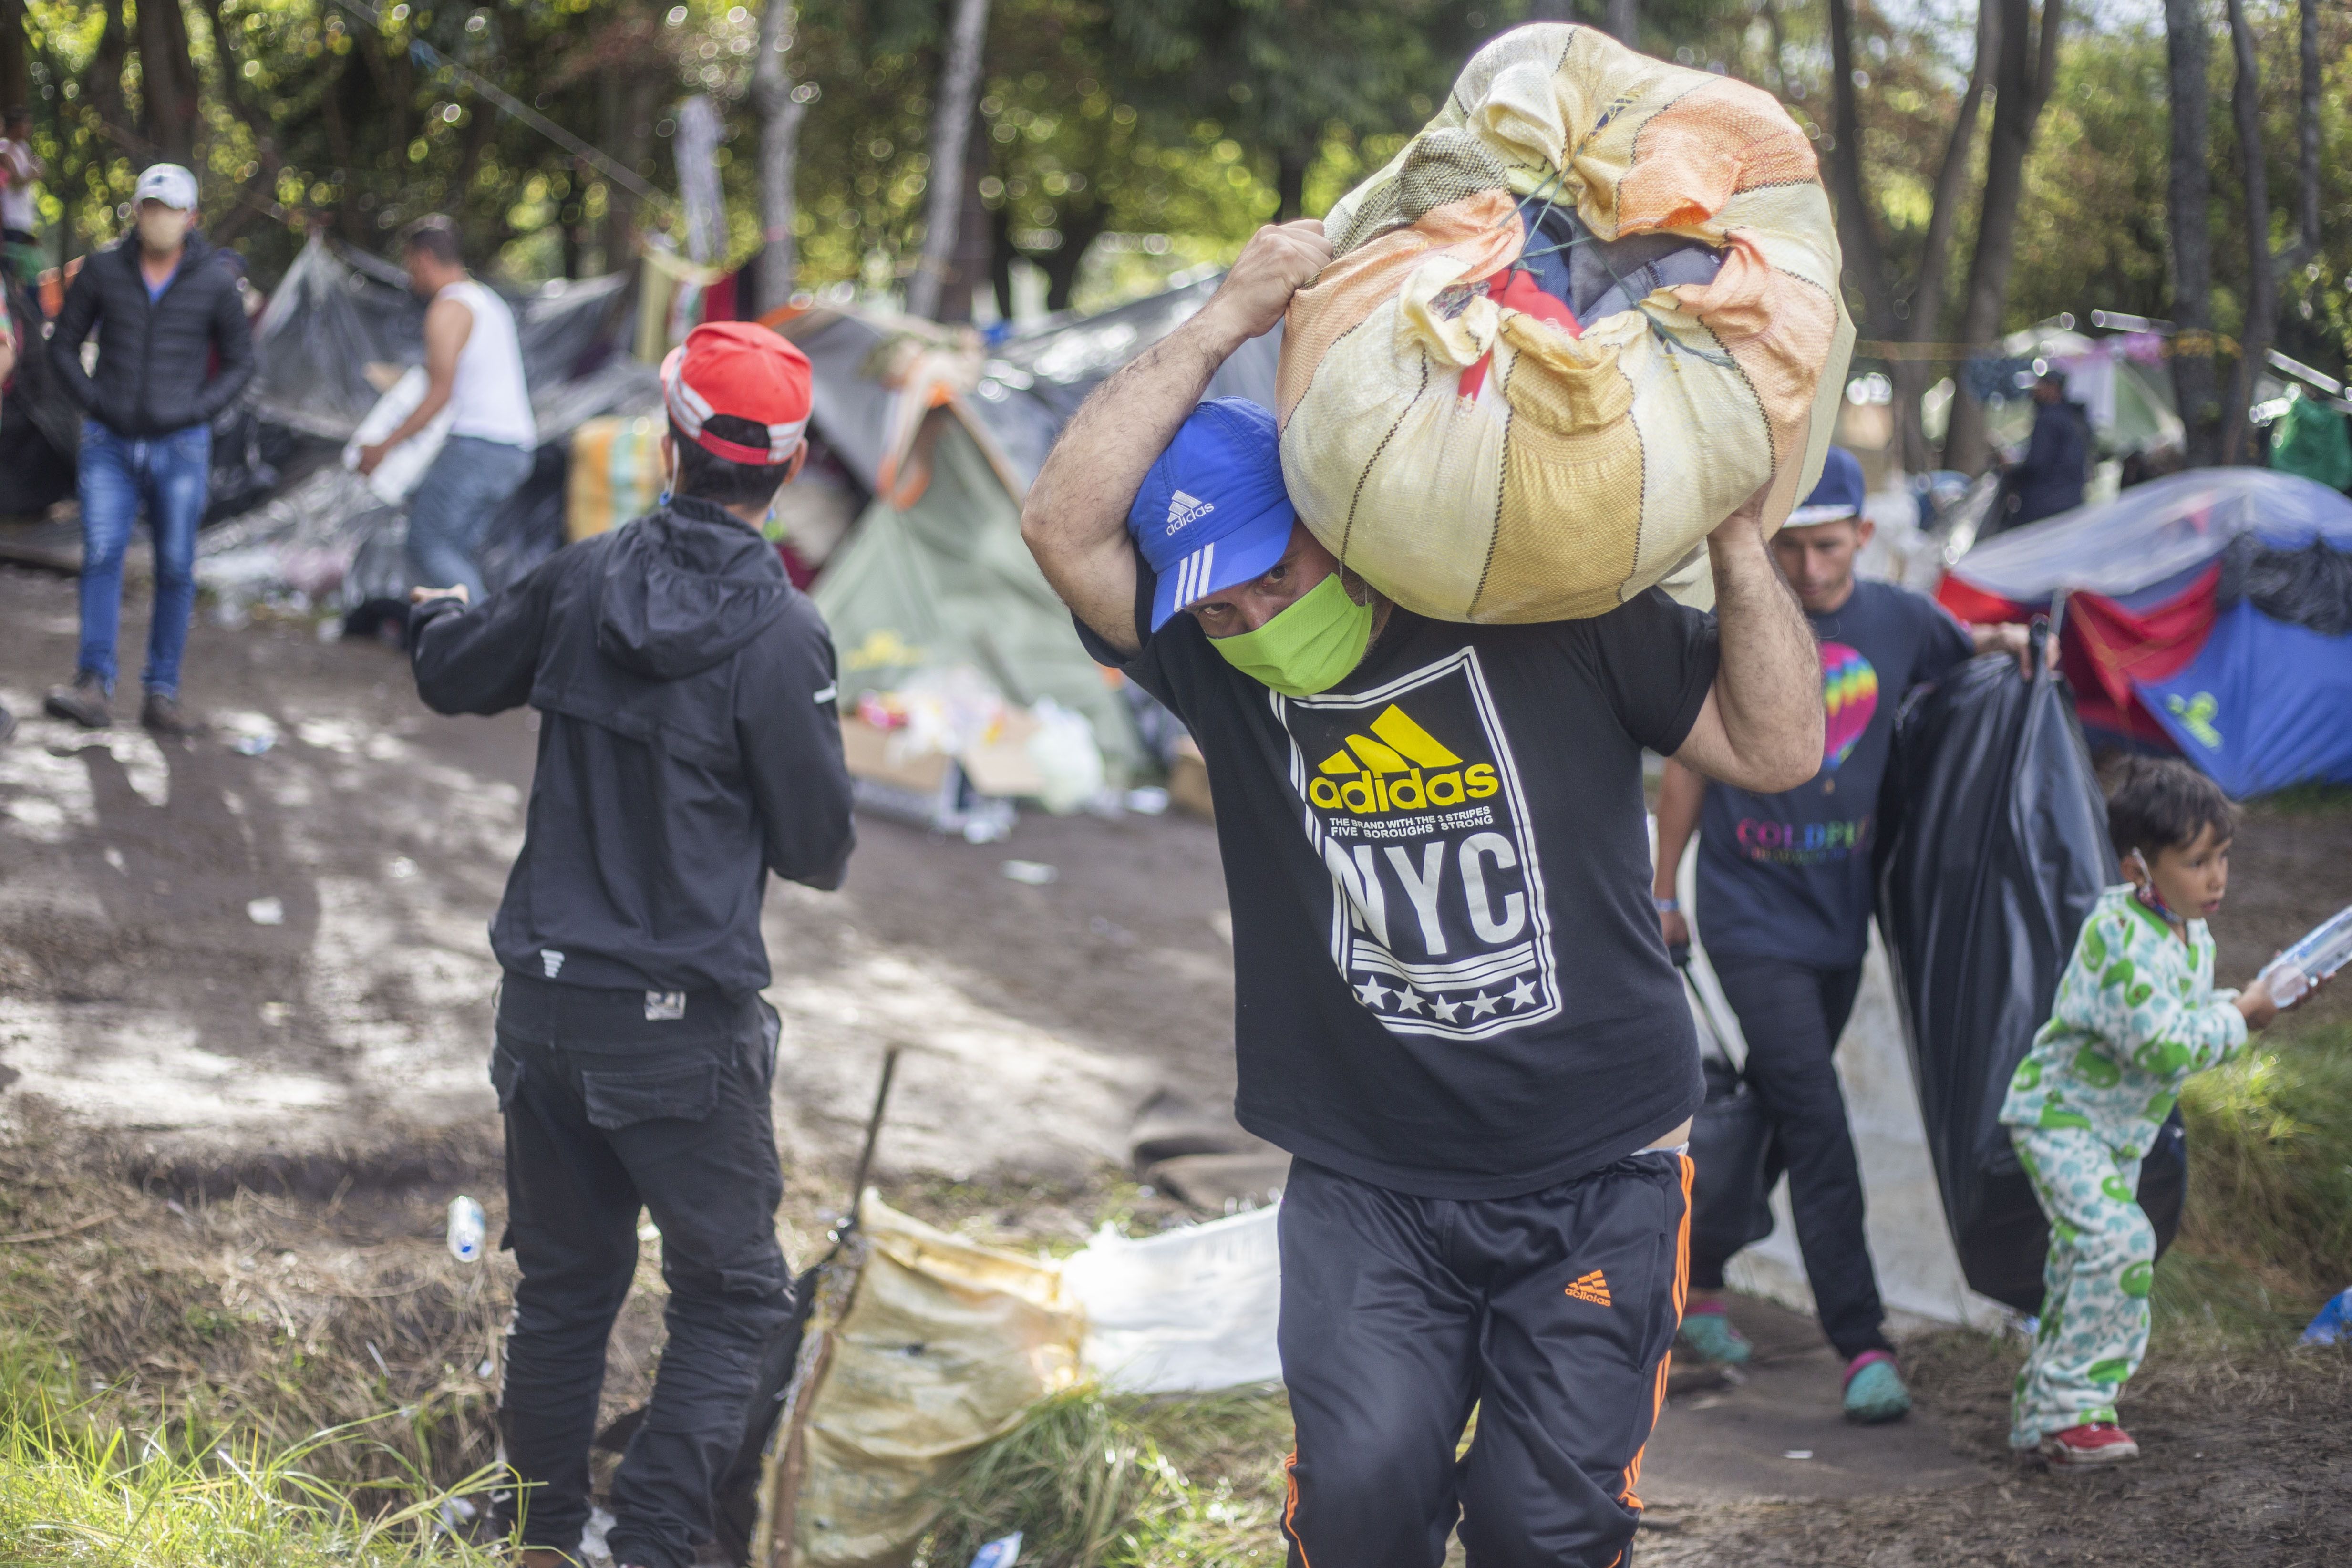 02/07/2020 Migrantes venezolanos en Colombia. La crisis política ralentiza los retornos, pero entre 500 y 700 personas salen al día de Venezuela POLITICA SUDAMÉRICA INTERNACIONAL VENEZUELA DANIEL GARZON HERAZO / ZUMA PRESS / CONTACTOPHOTO 